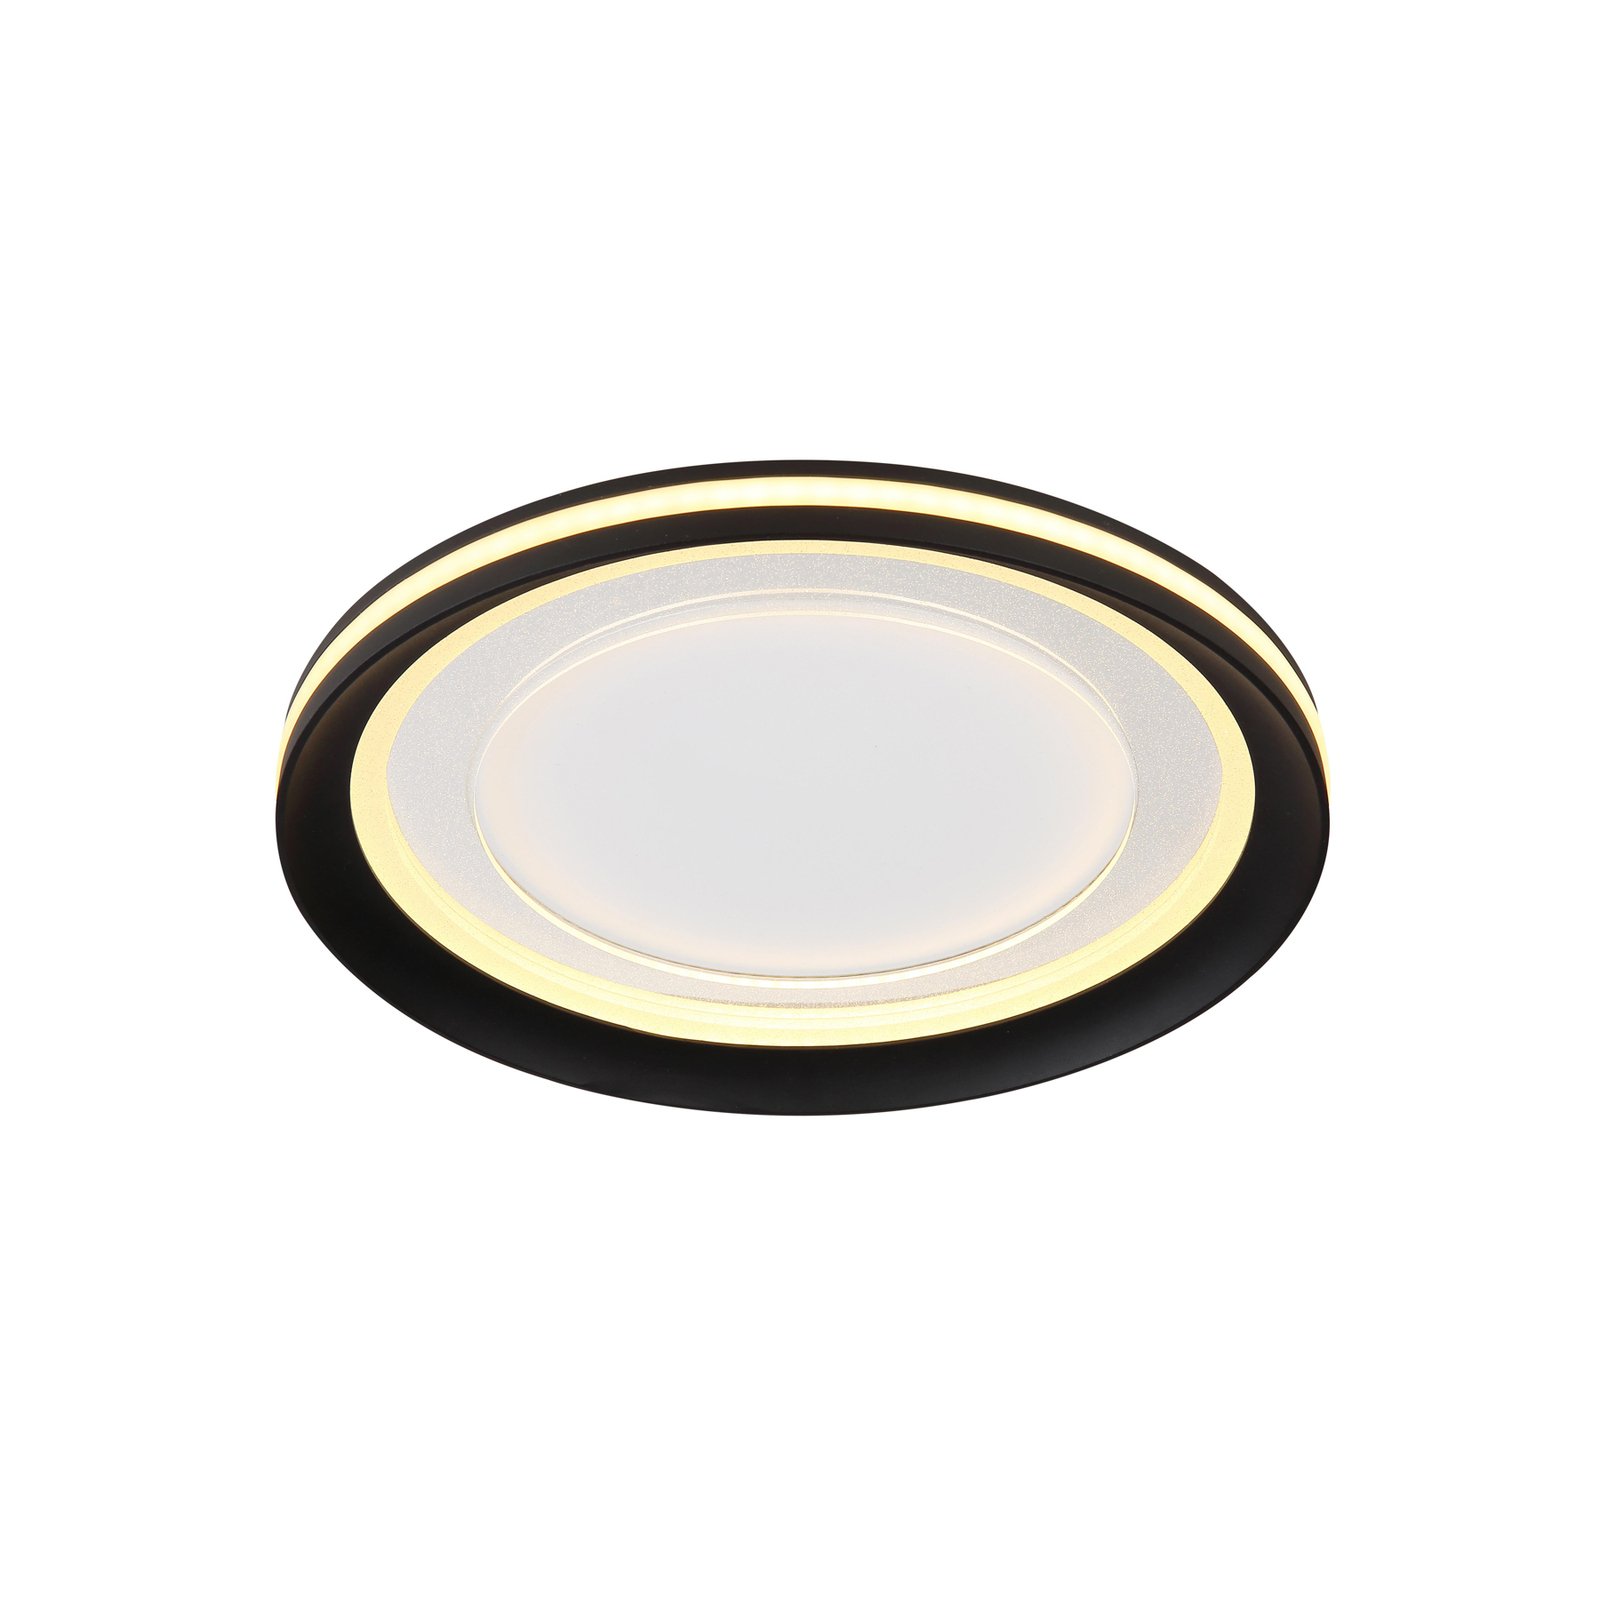 Stropné svietidlo LED Clarino, Ø 36 cm, čierna/biela, akryl